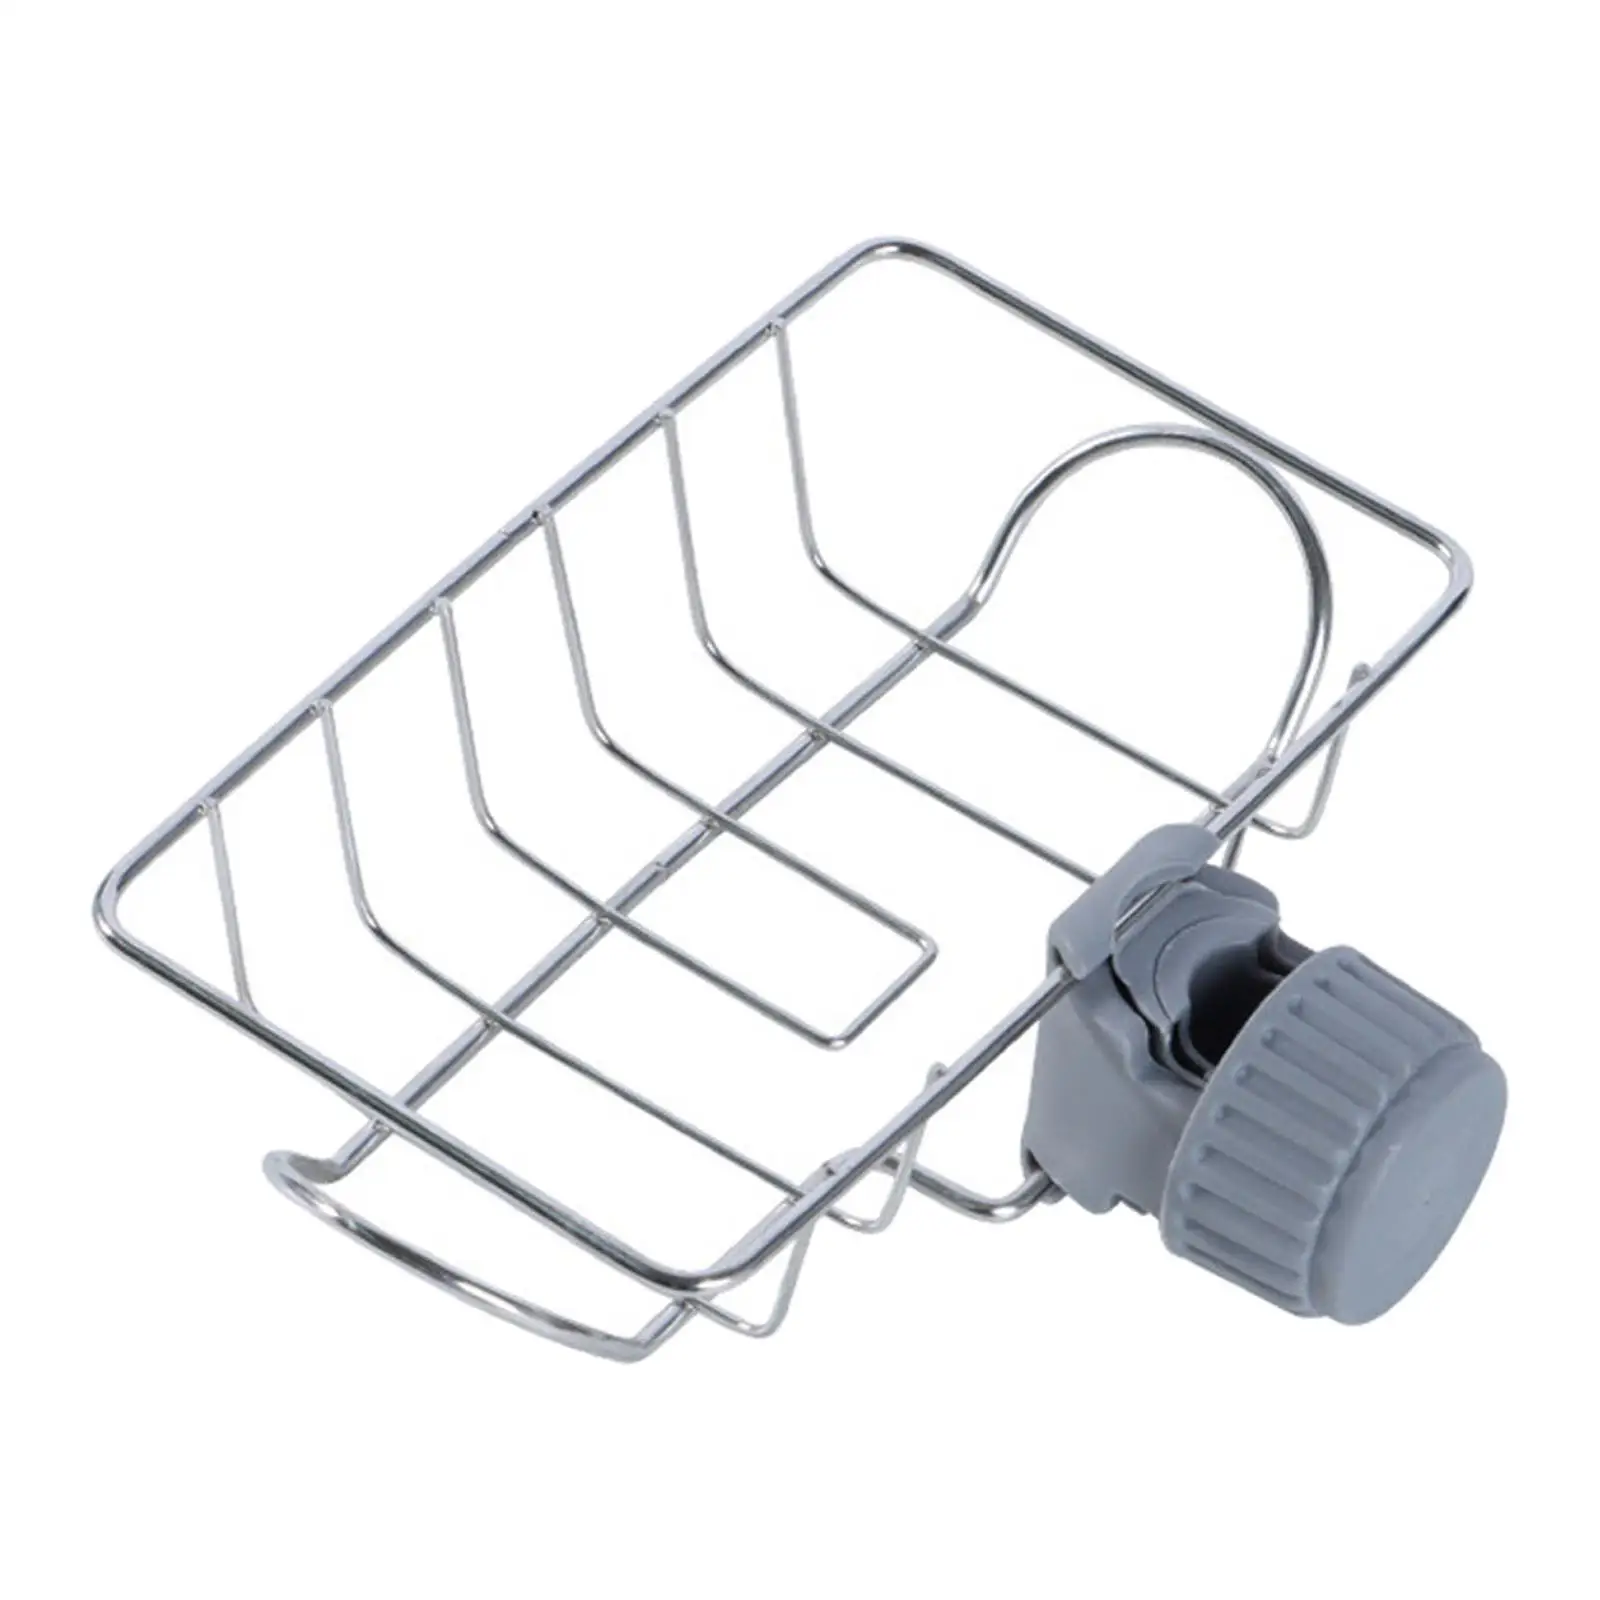 Canopy Pole Storage Basket Vegetables Organizer Soap Drainer Shelf Sink Sponge Holder for Kitchen Camping Tent Bathroom